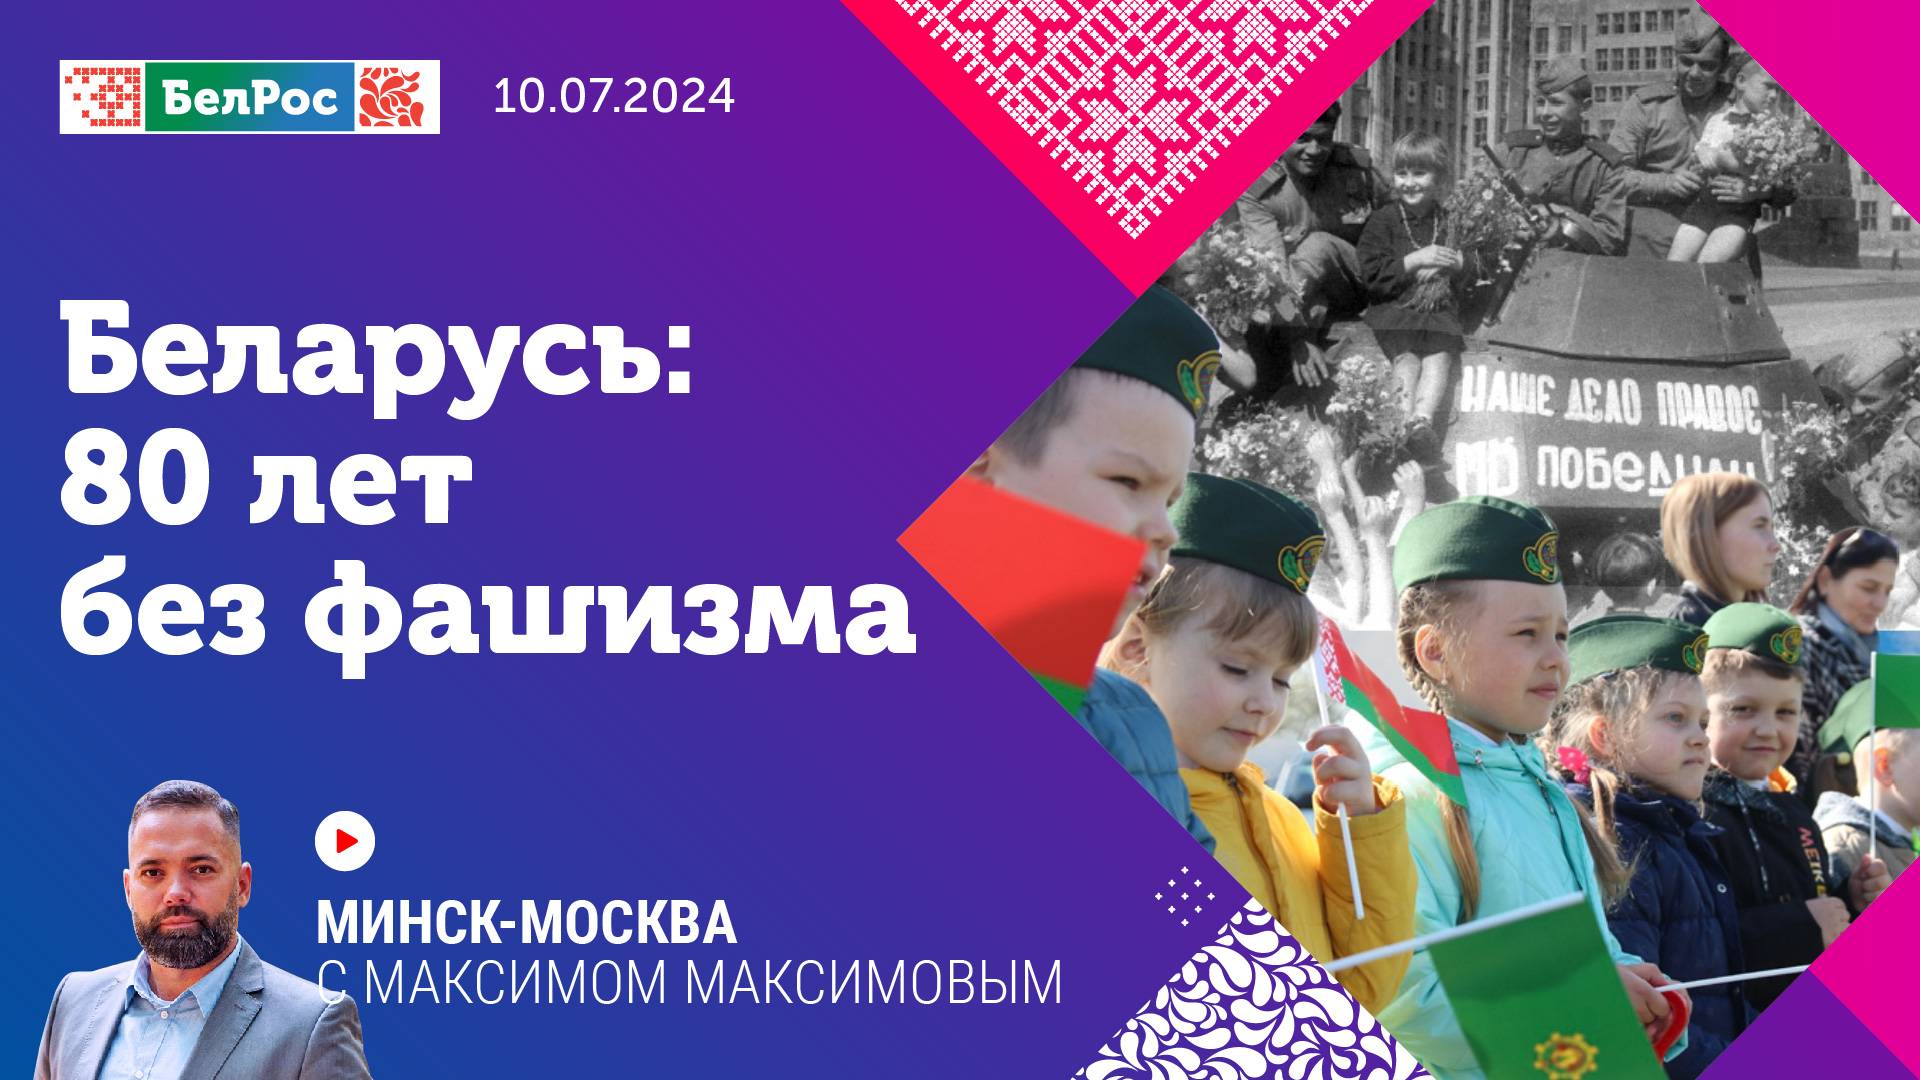 Минск-Москва | Беларусь: 80 лет без фашизма